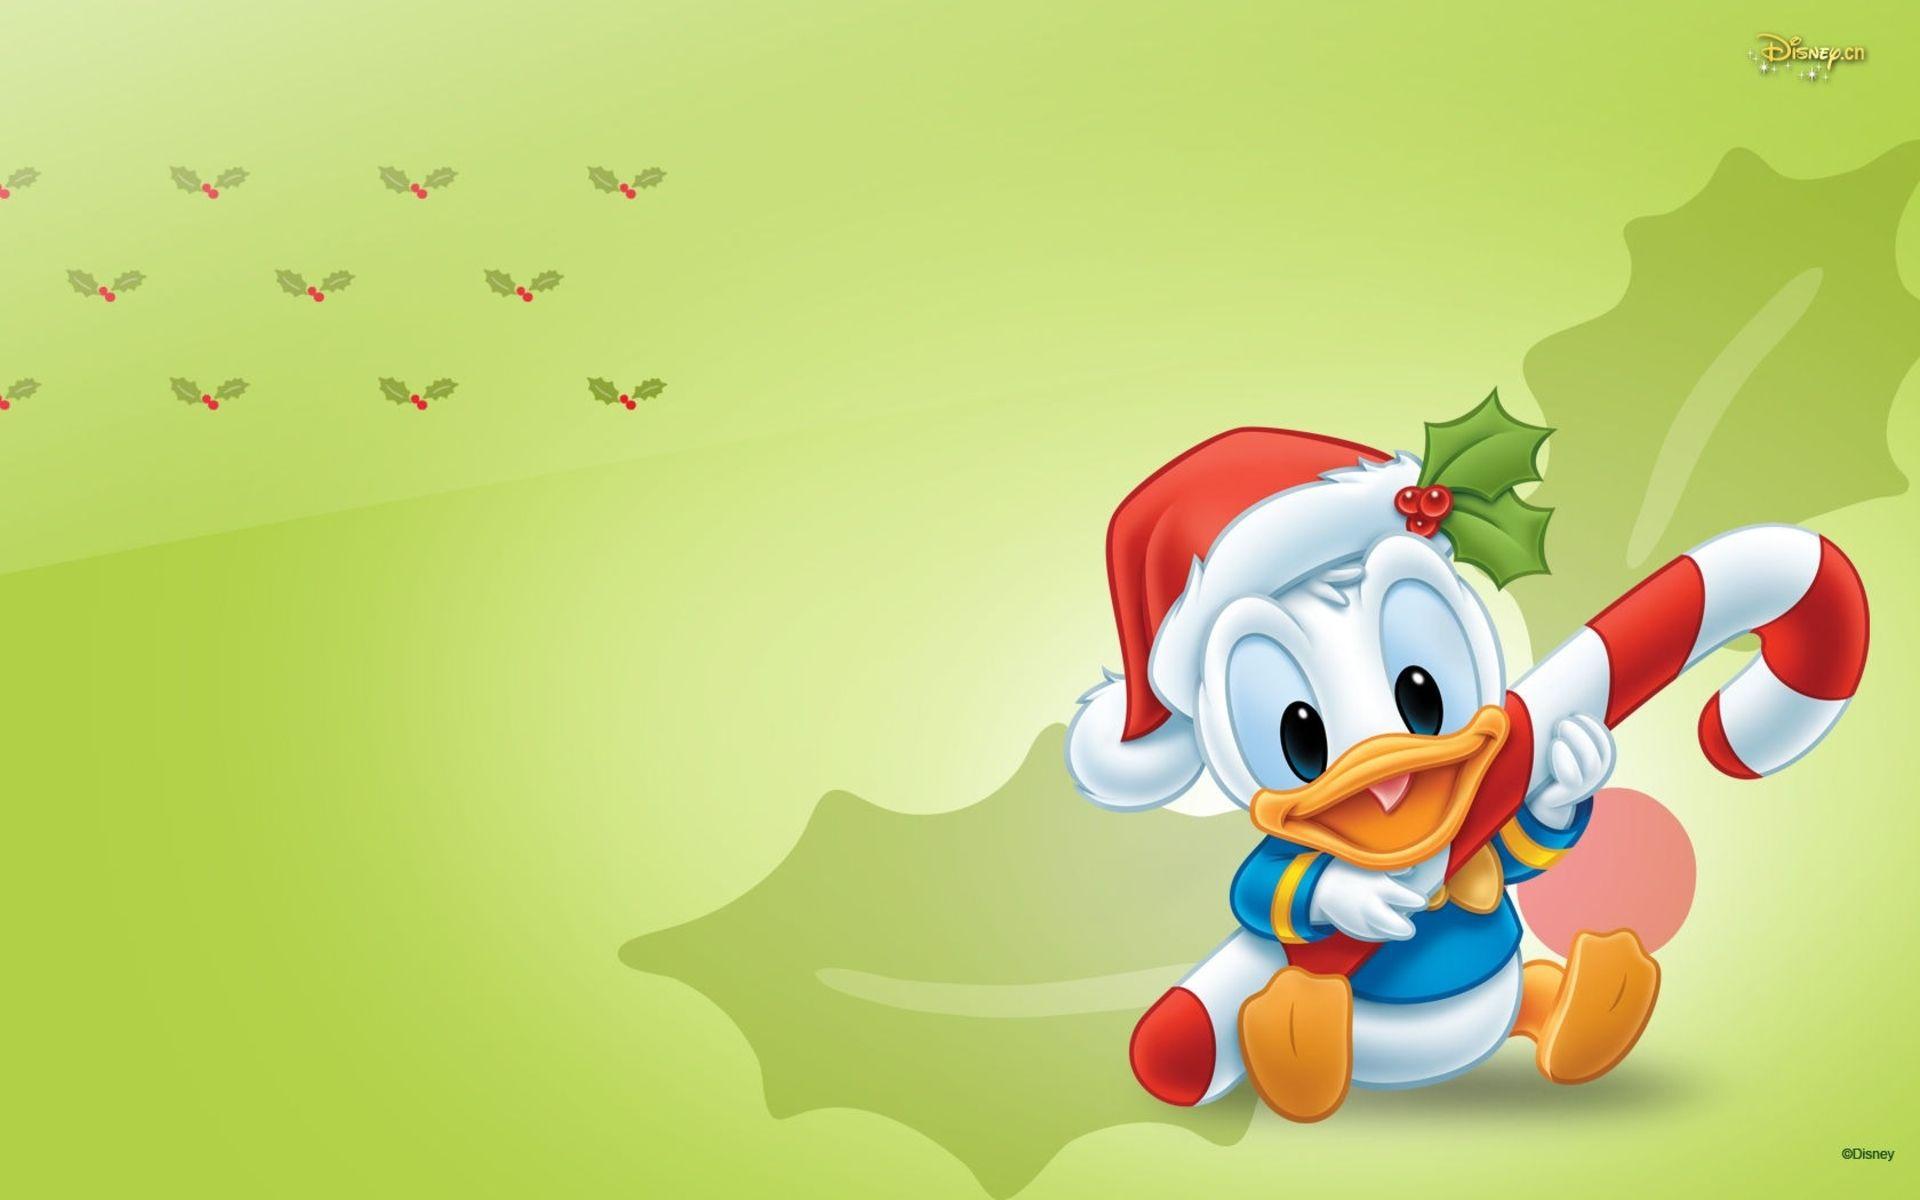 Cute Disney Baby Donald Duck Wallpaper. art. Duck